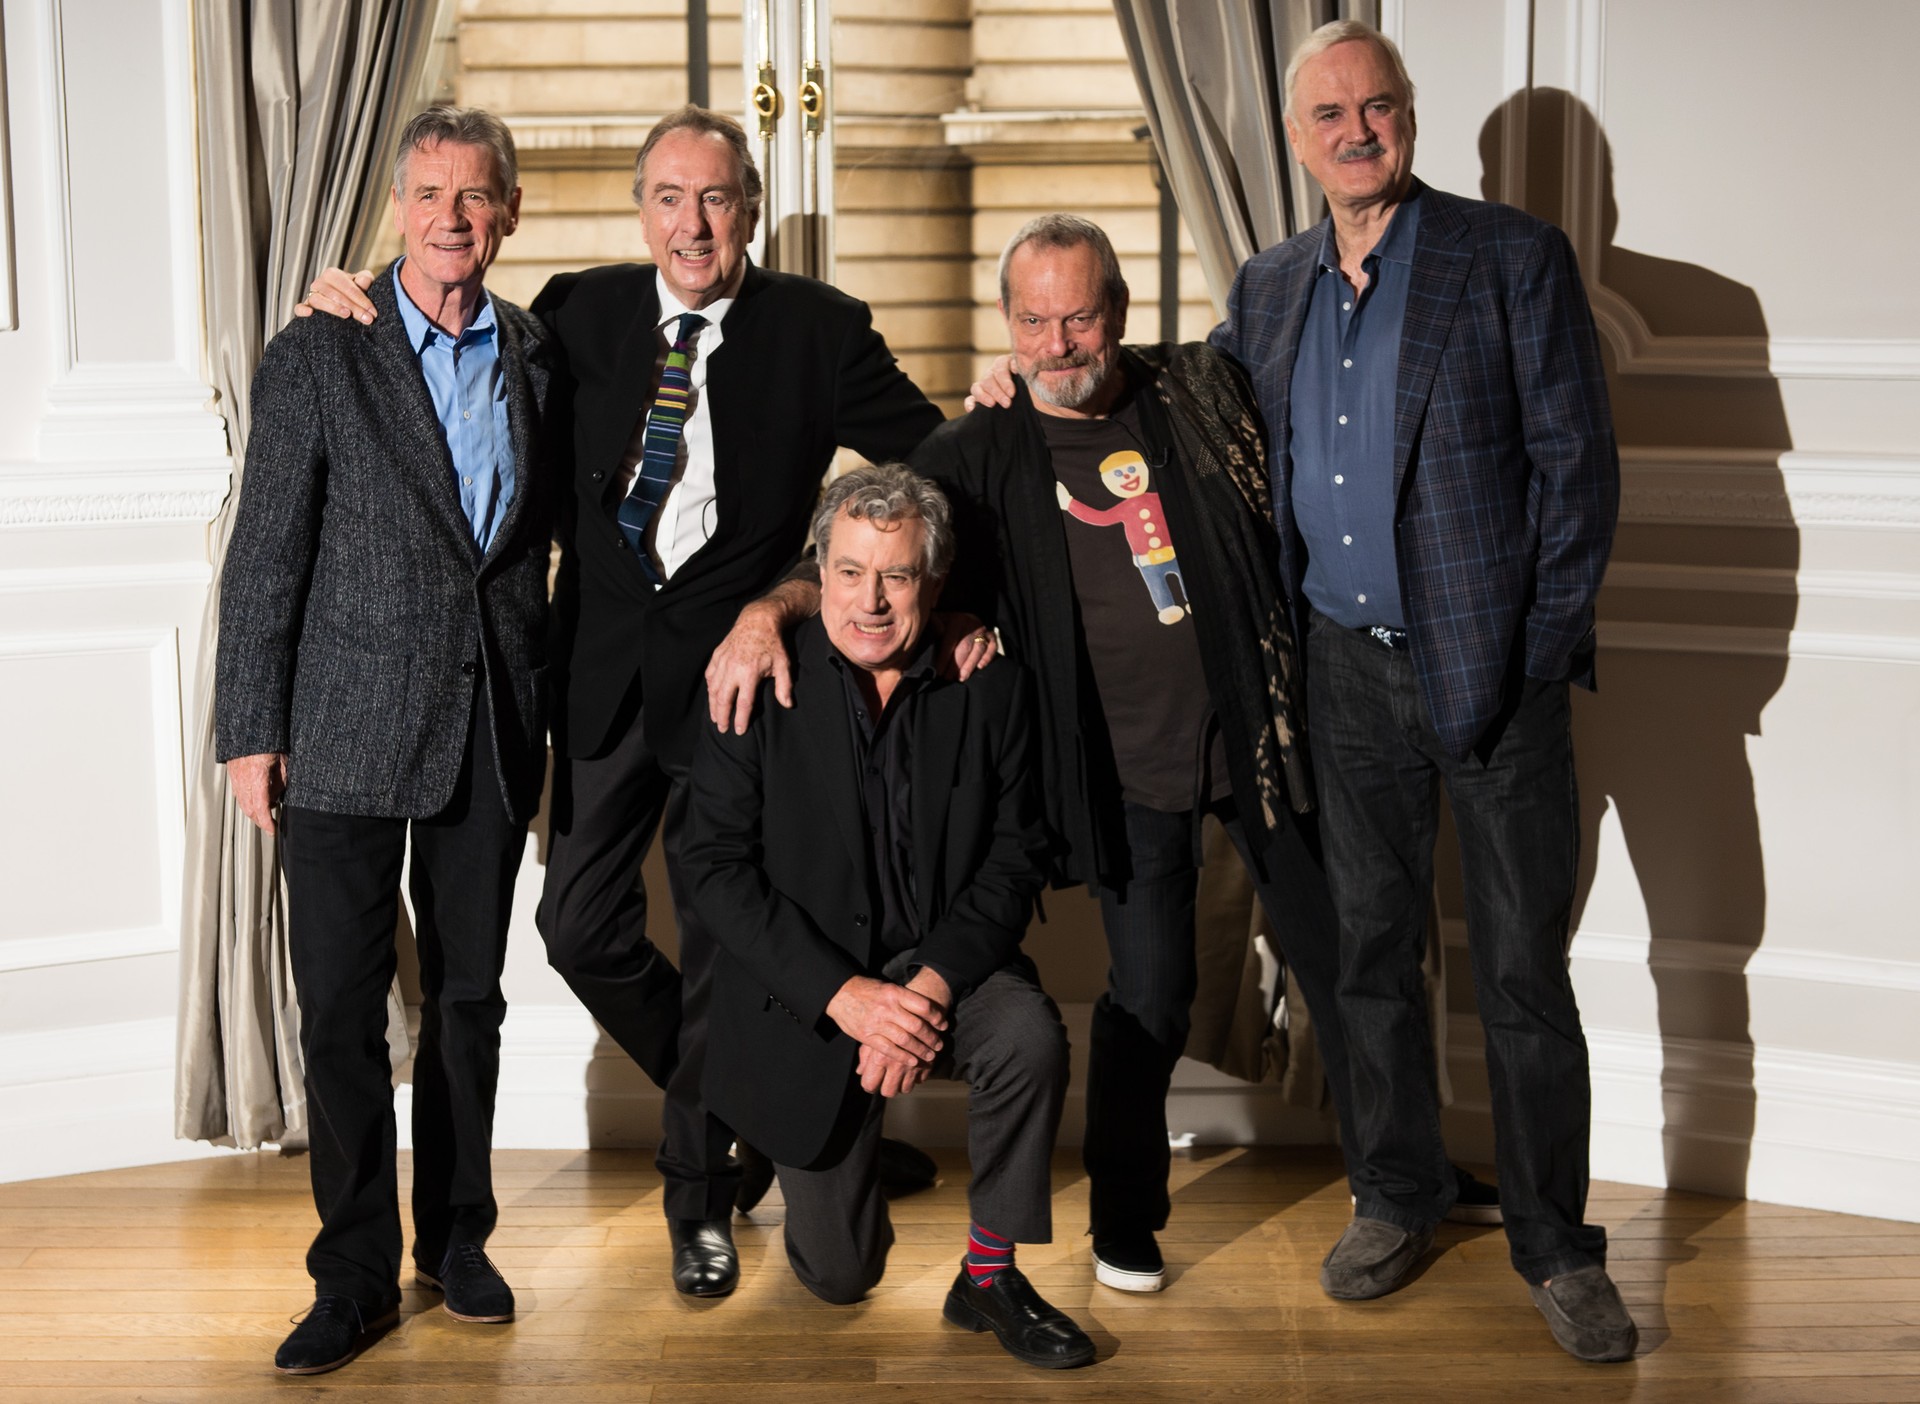 Os humoristas do Monty Python farão uma série de apresentações na Arena O2, em Londres, no mês de julho (Foto: Getty Images)